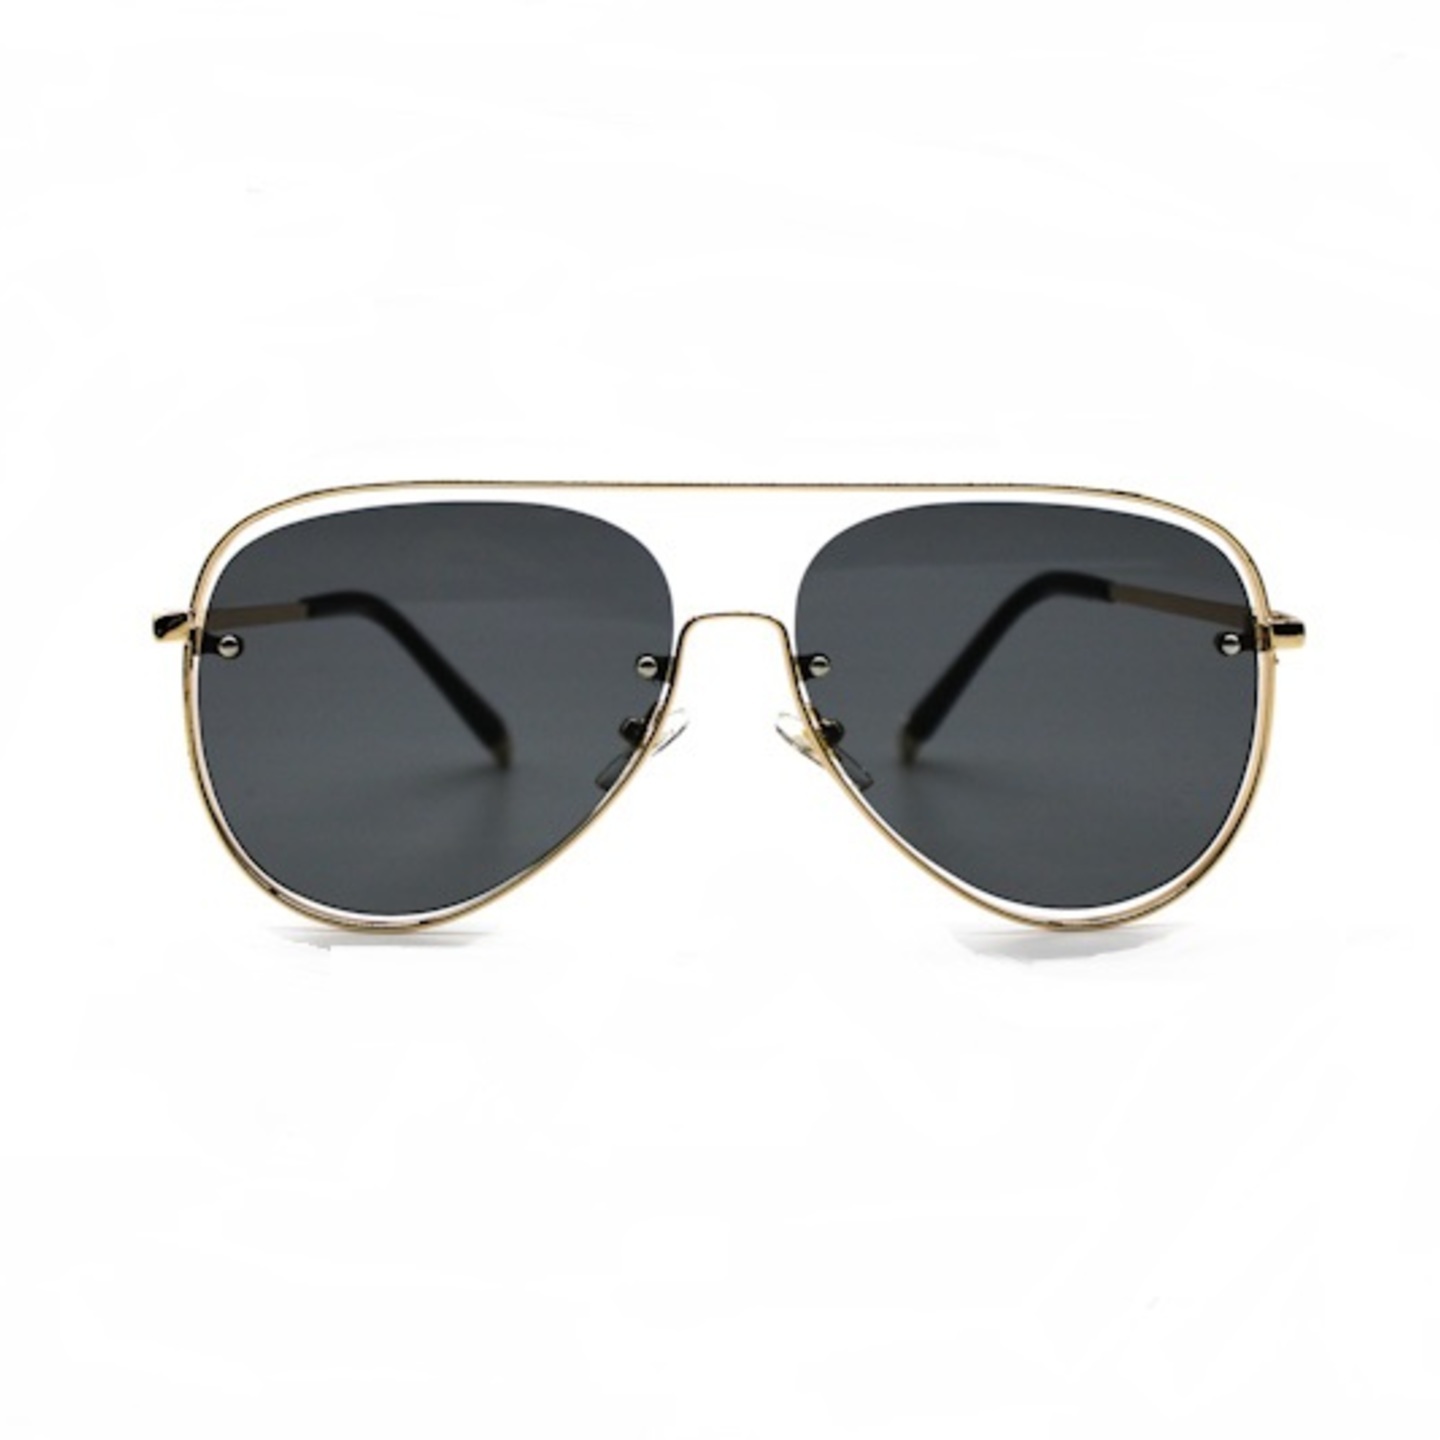 Black Sunglasses for men and women